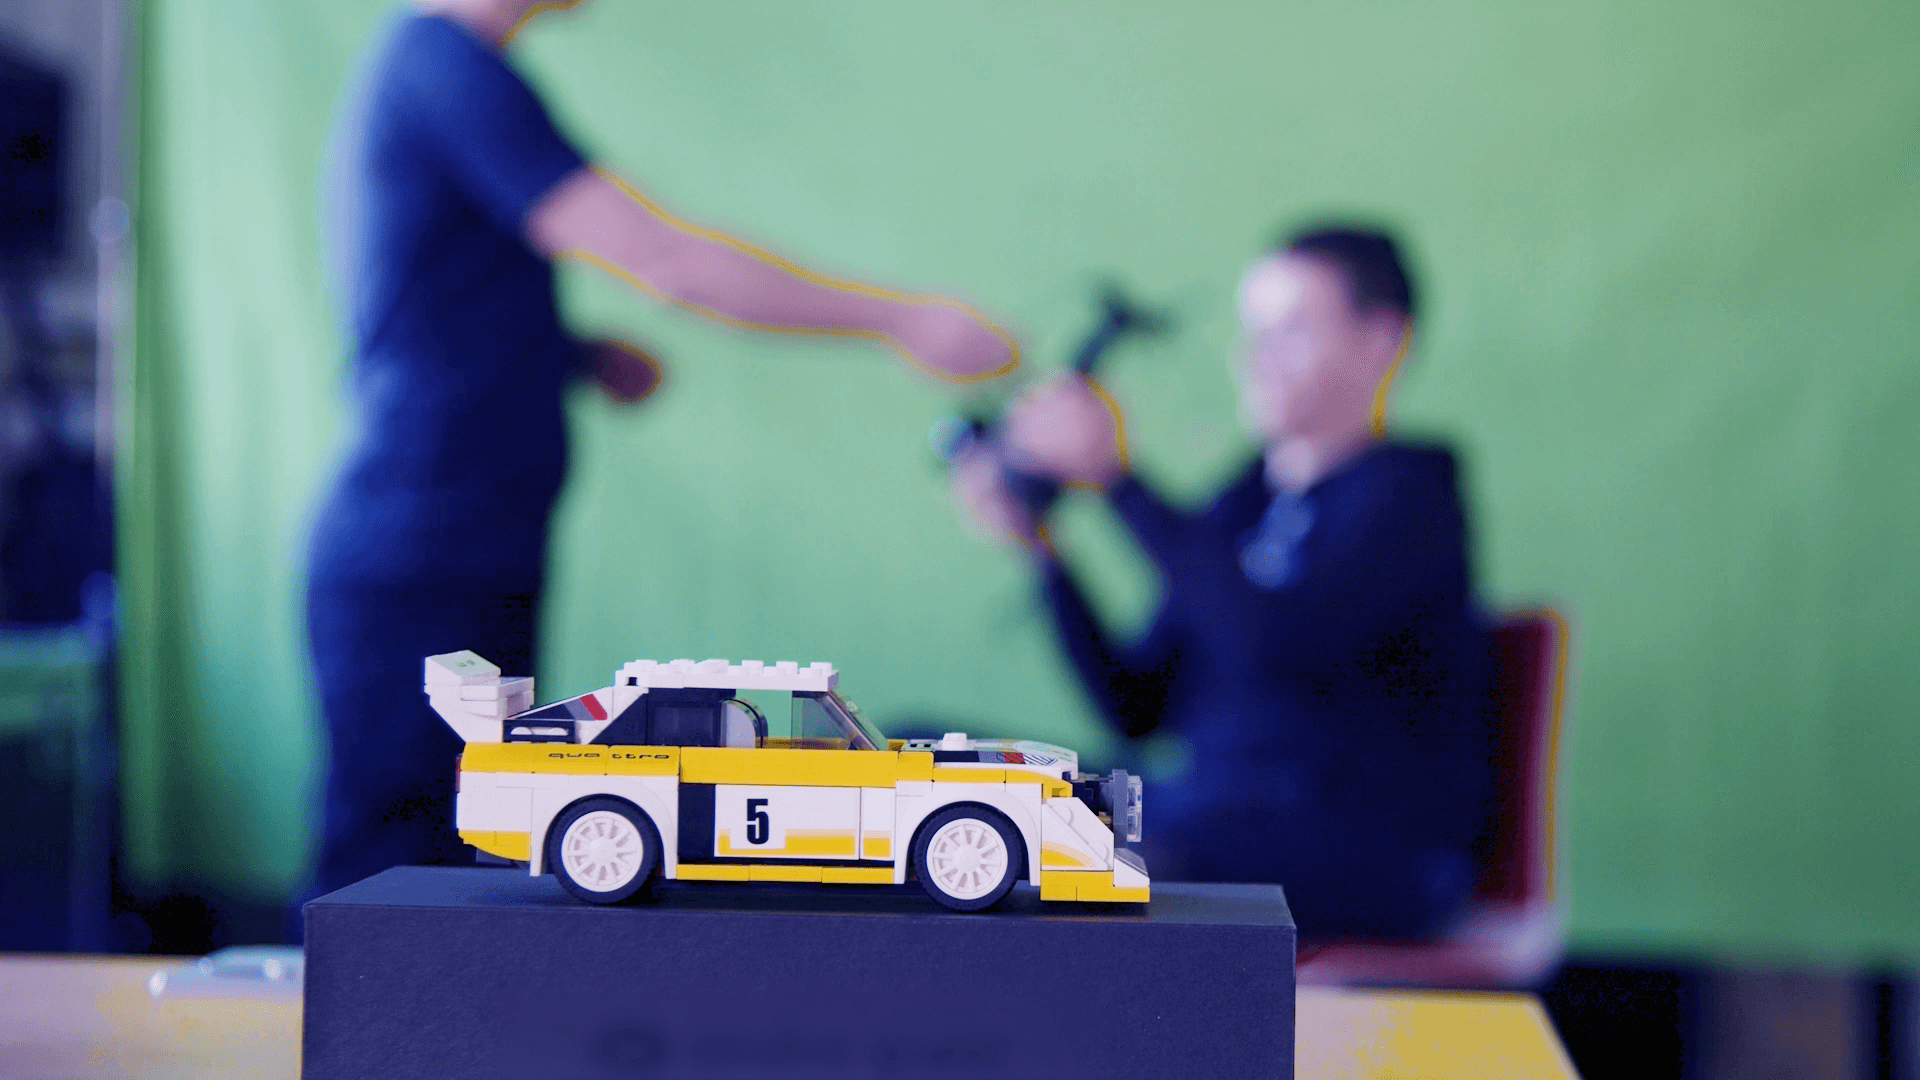 Ein gelb-weißes Legoauto im Vordergrund, dahinter verschwommen zwei Personen vor einem Greenscreen.